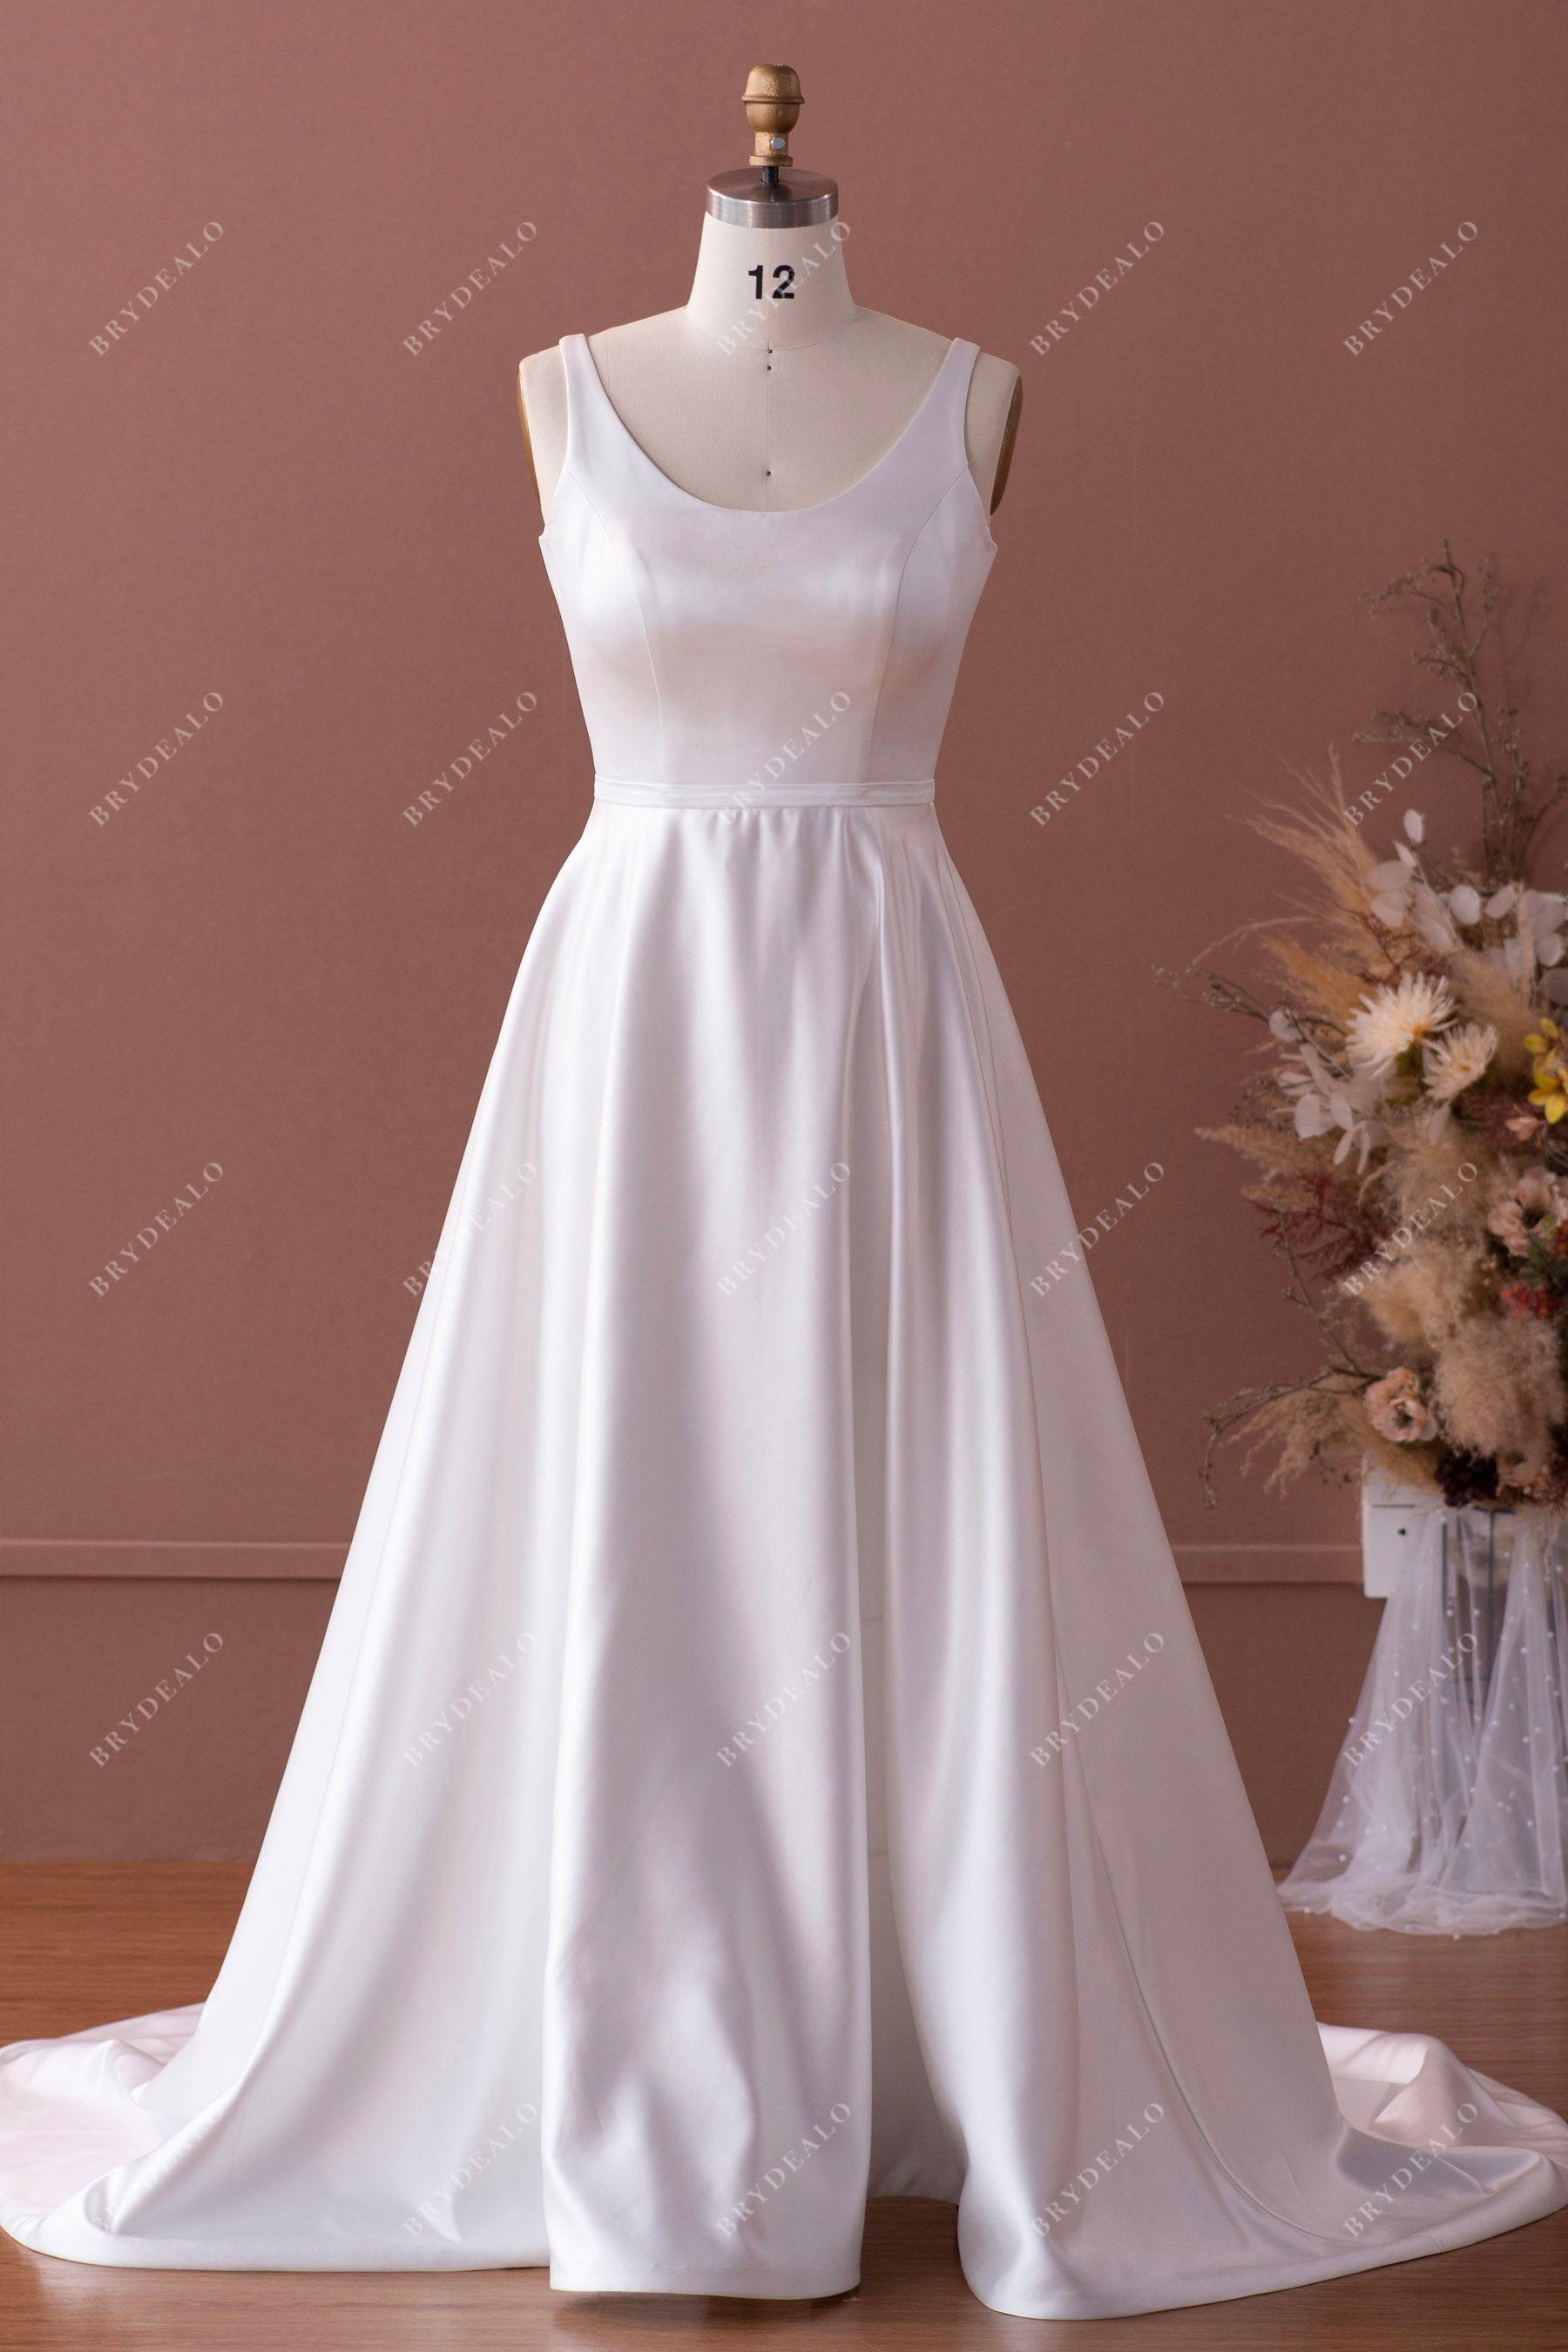 http://brydealofactory.com/cdn/shop/products/scoop-neck-satin-A-line-wedding-dress.jpg?v=1658390407&width=2048